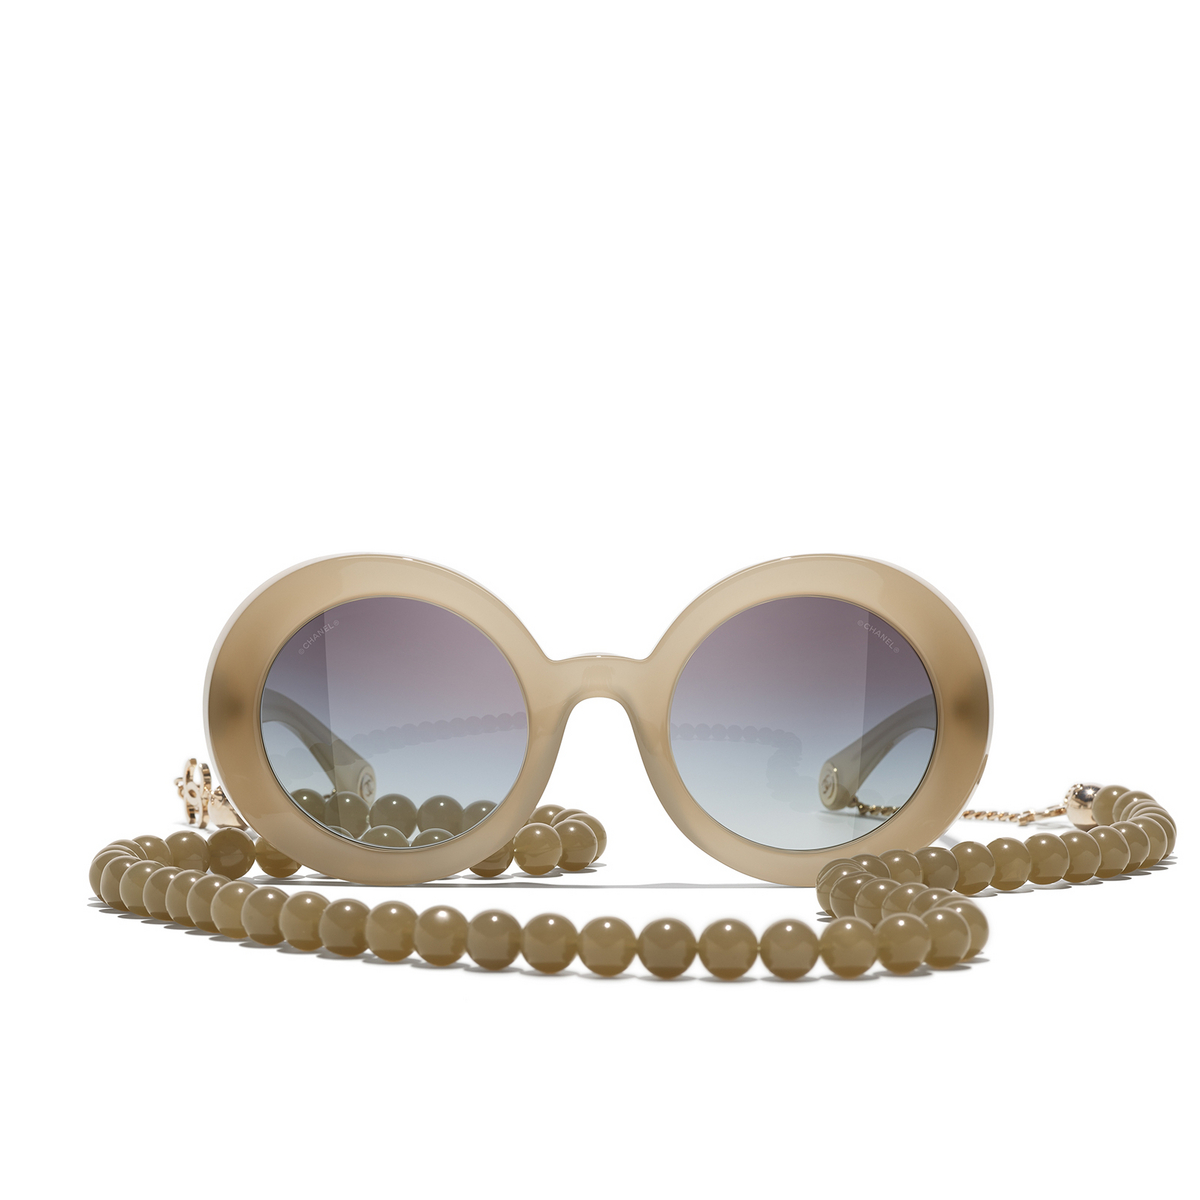 CHANEL round Sunglasses 1719S6 Dark Beige & Gold - front view